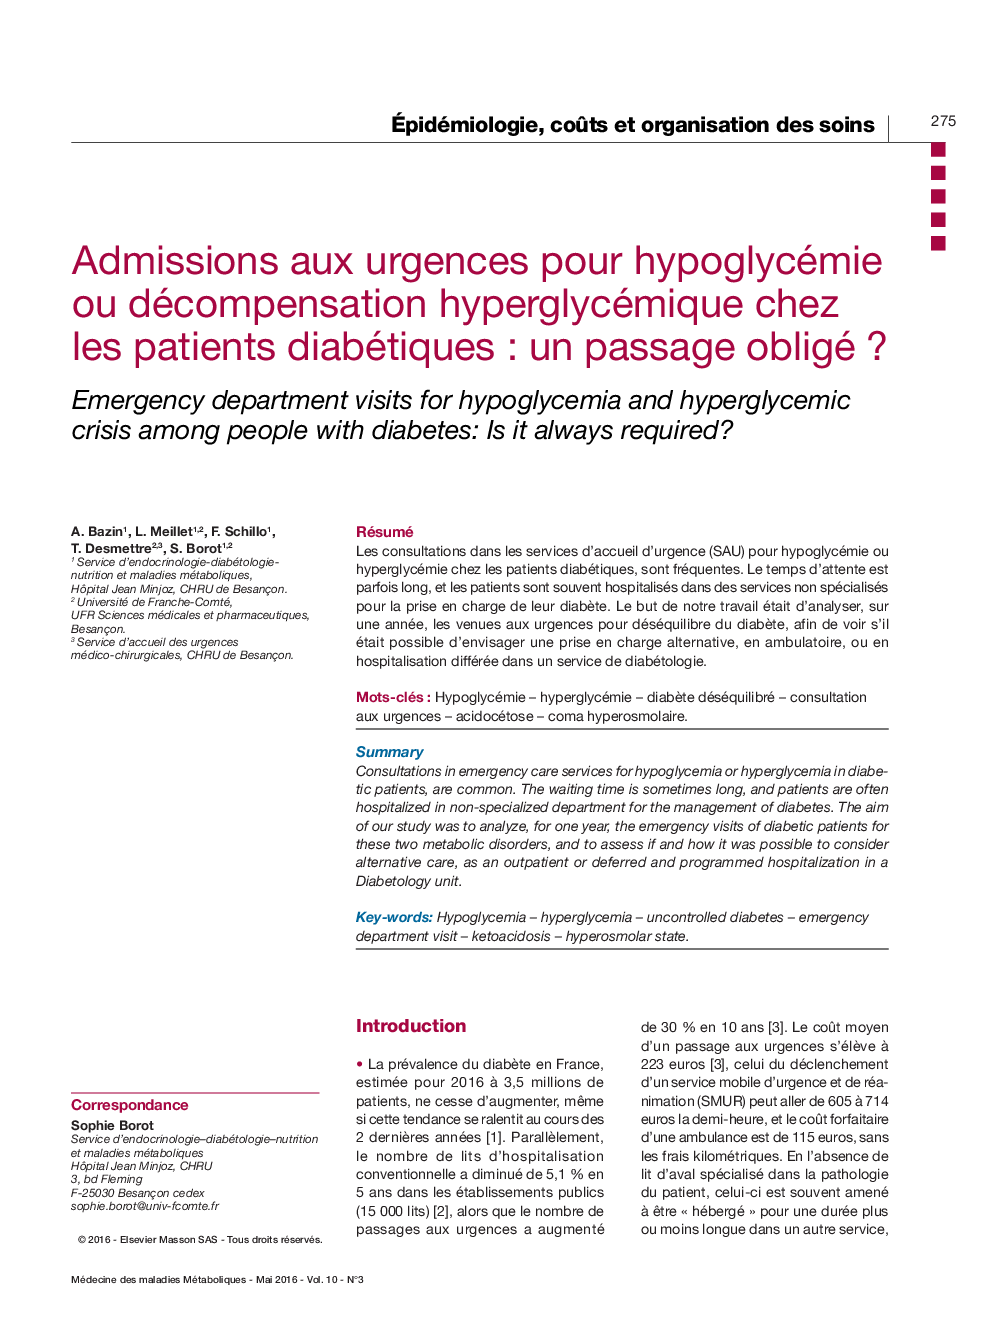 Admissions aux urgences pour hypoglycémie ou décompensation hyperglycémique chez les patients diabétiques : un passage obligé ?